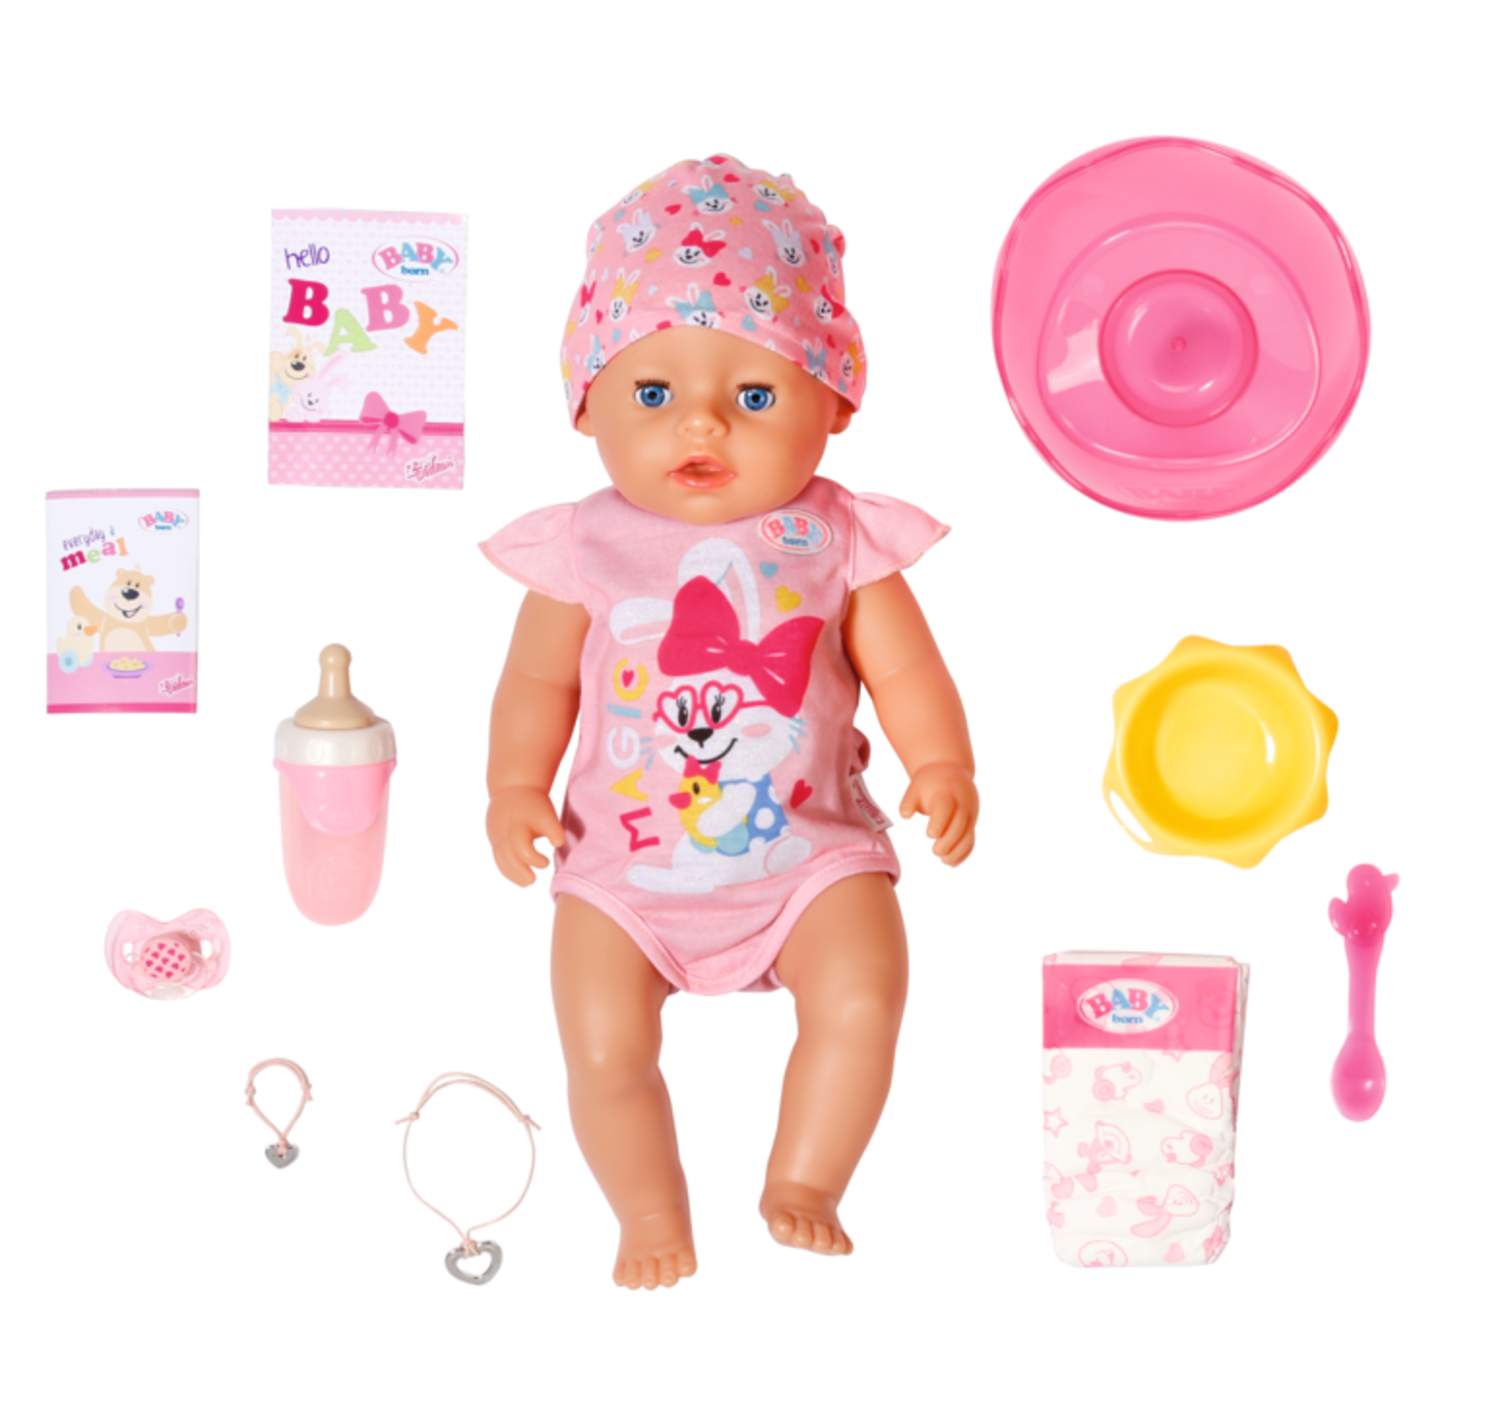 Куклы BabyBorn: особенности, отличия от других популярных кукол